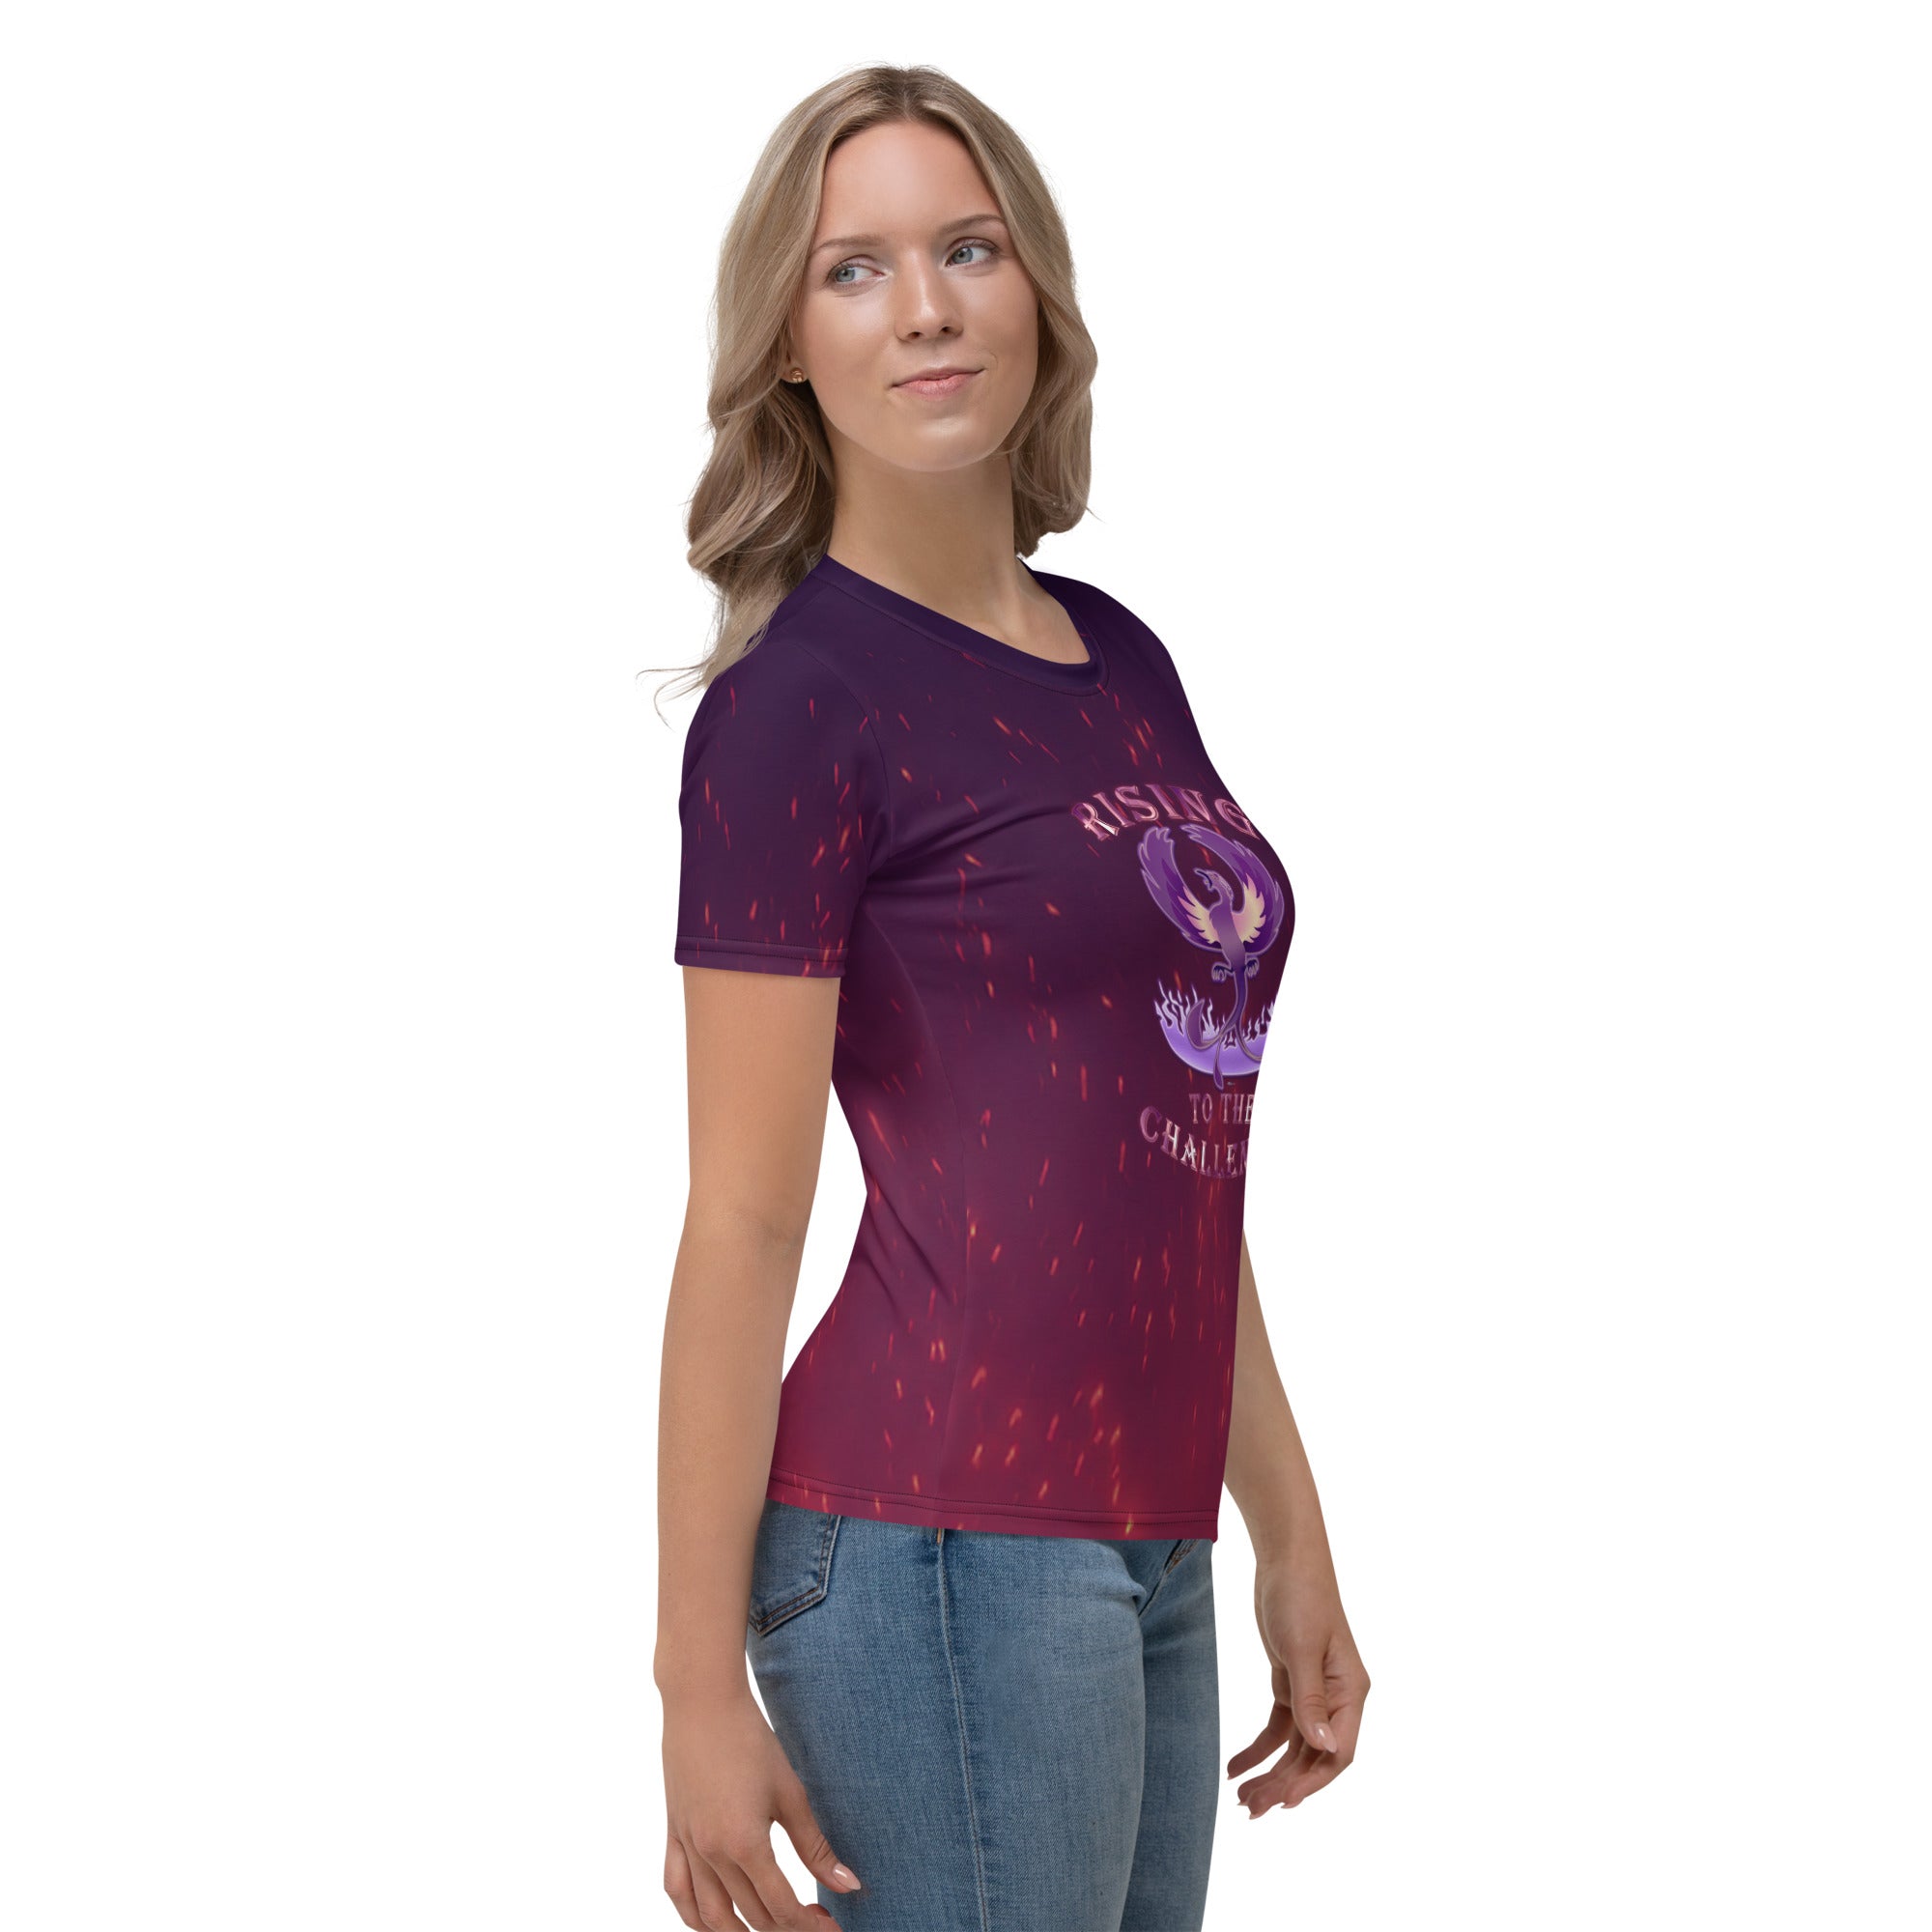 Purple Phoenix Women's T-shirt